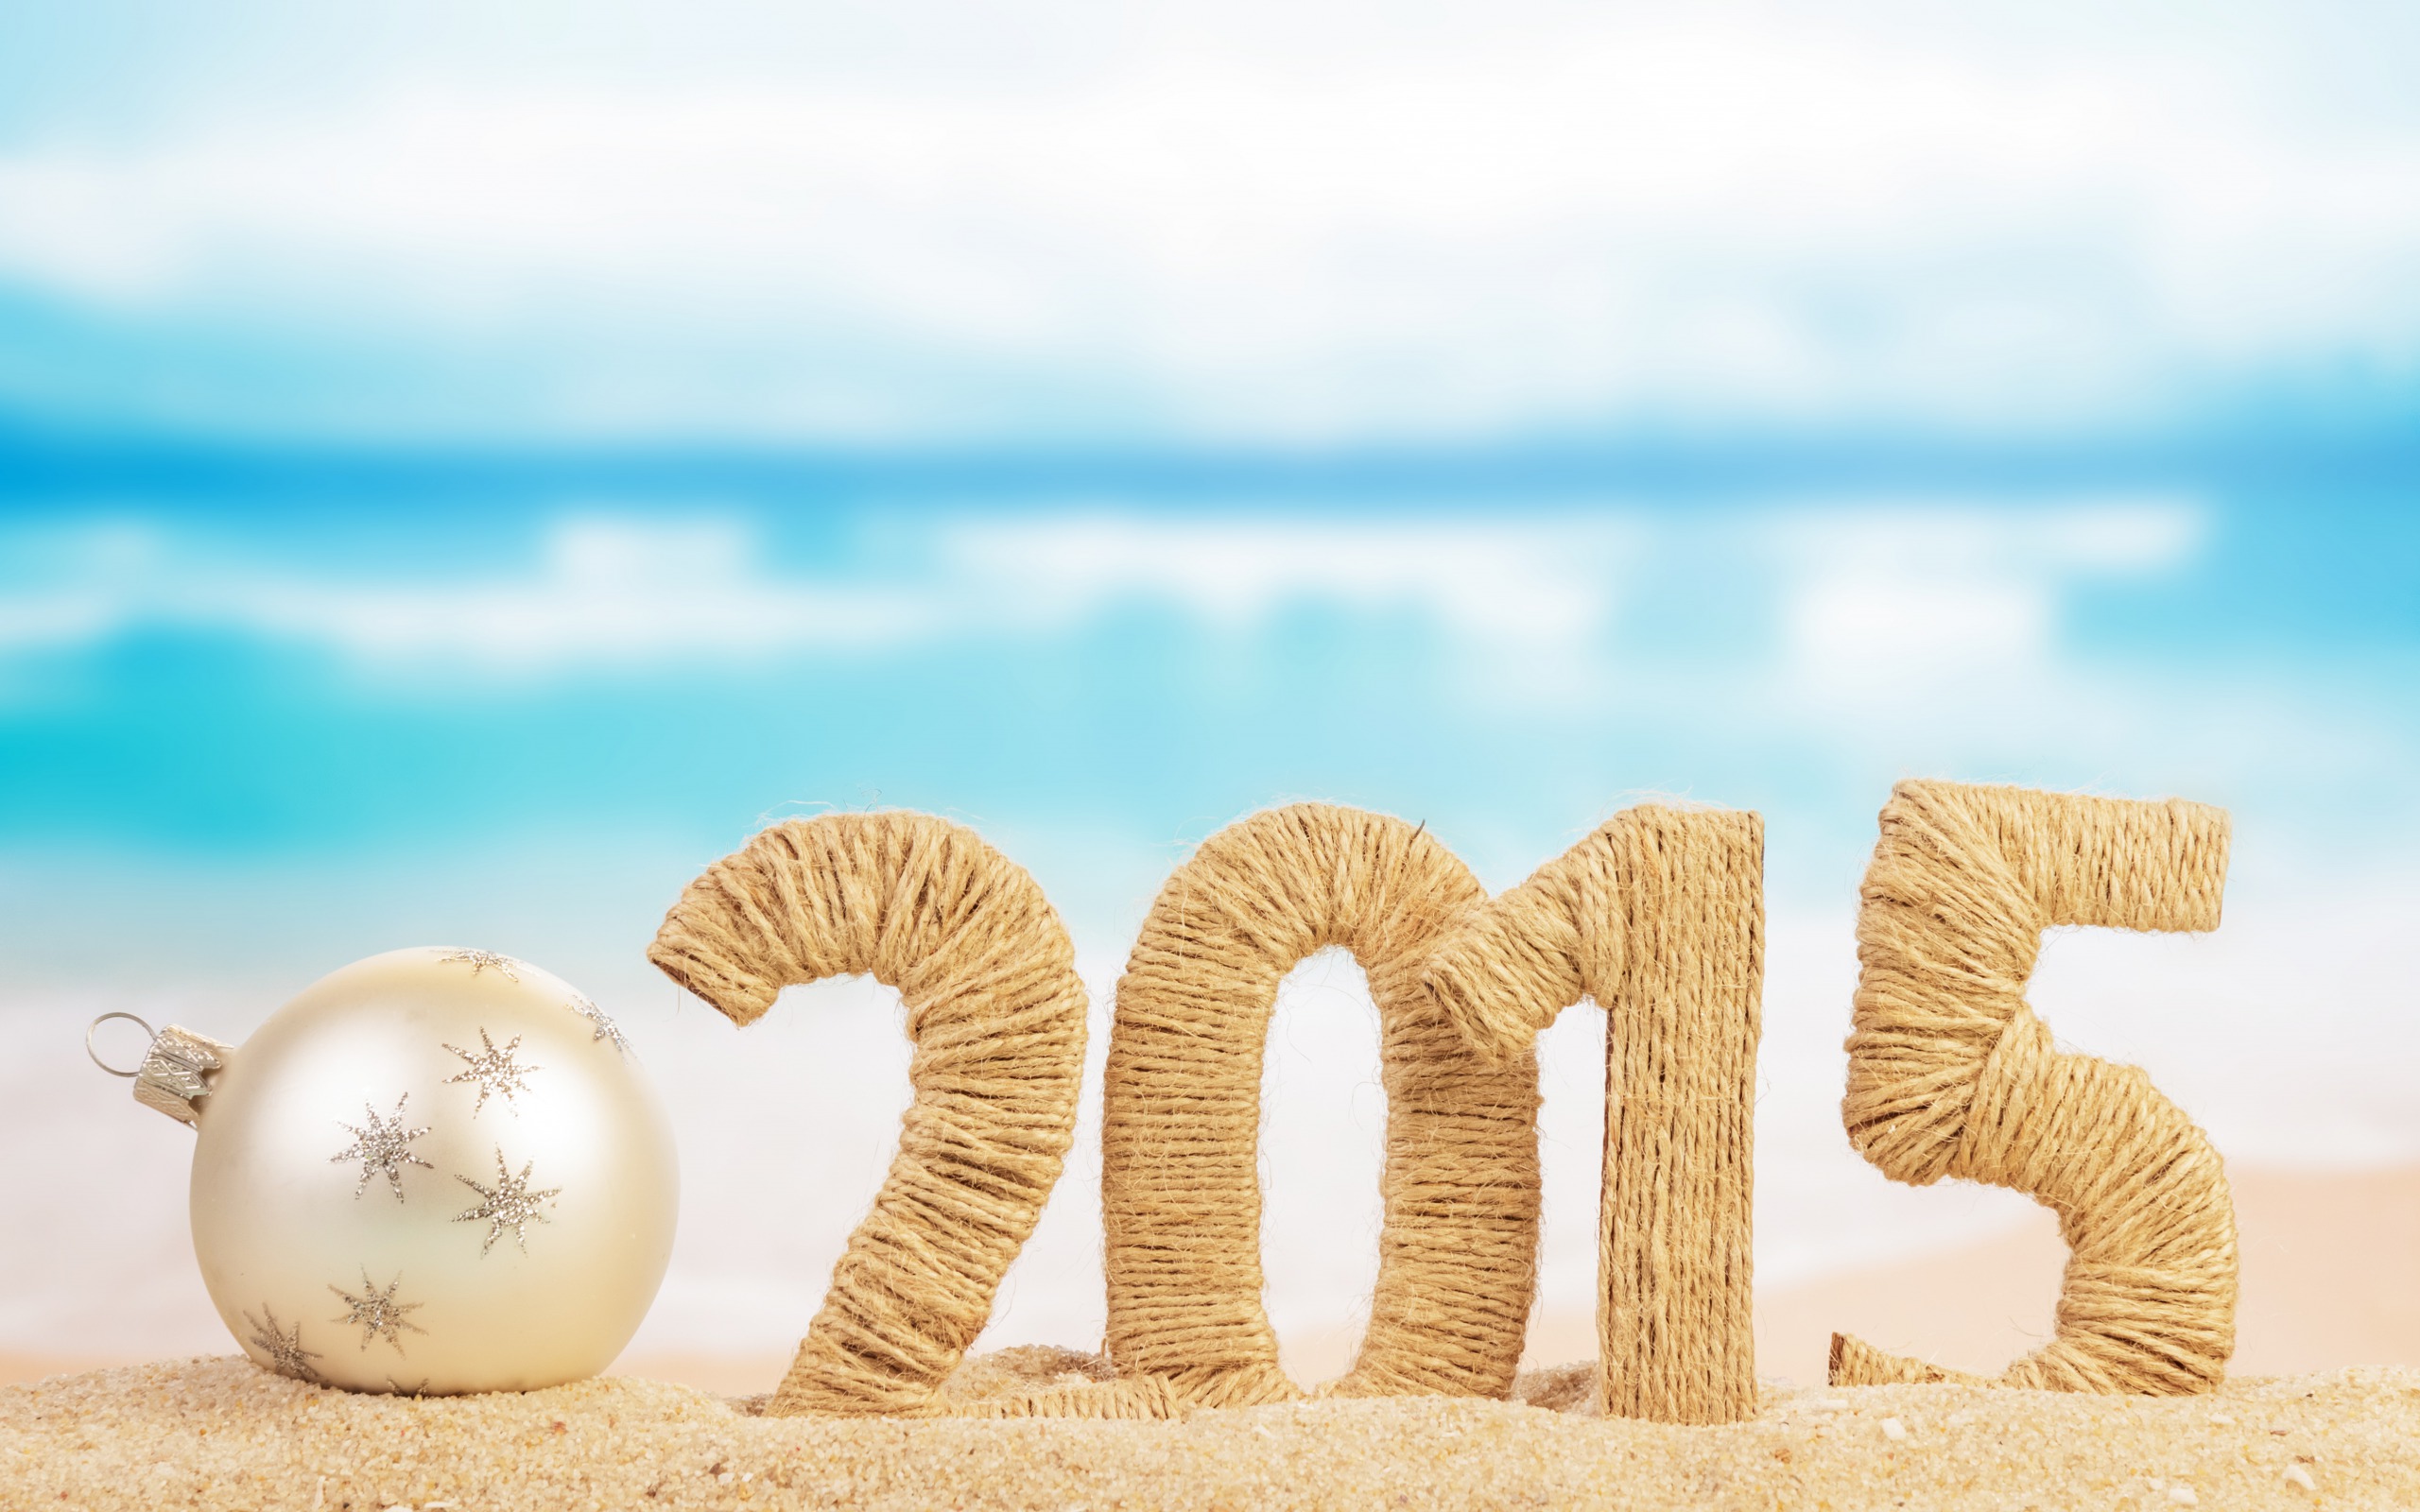 Популярные заставки и фоны Новый Год 2015 на компьютер